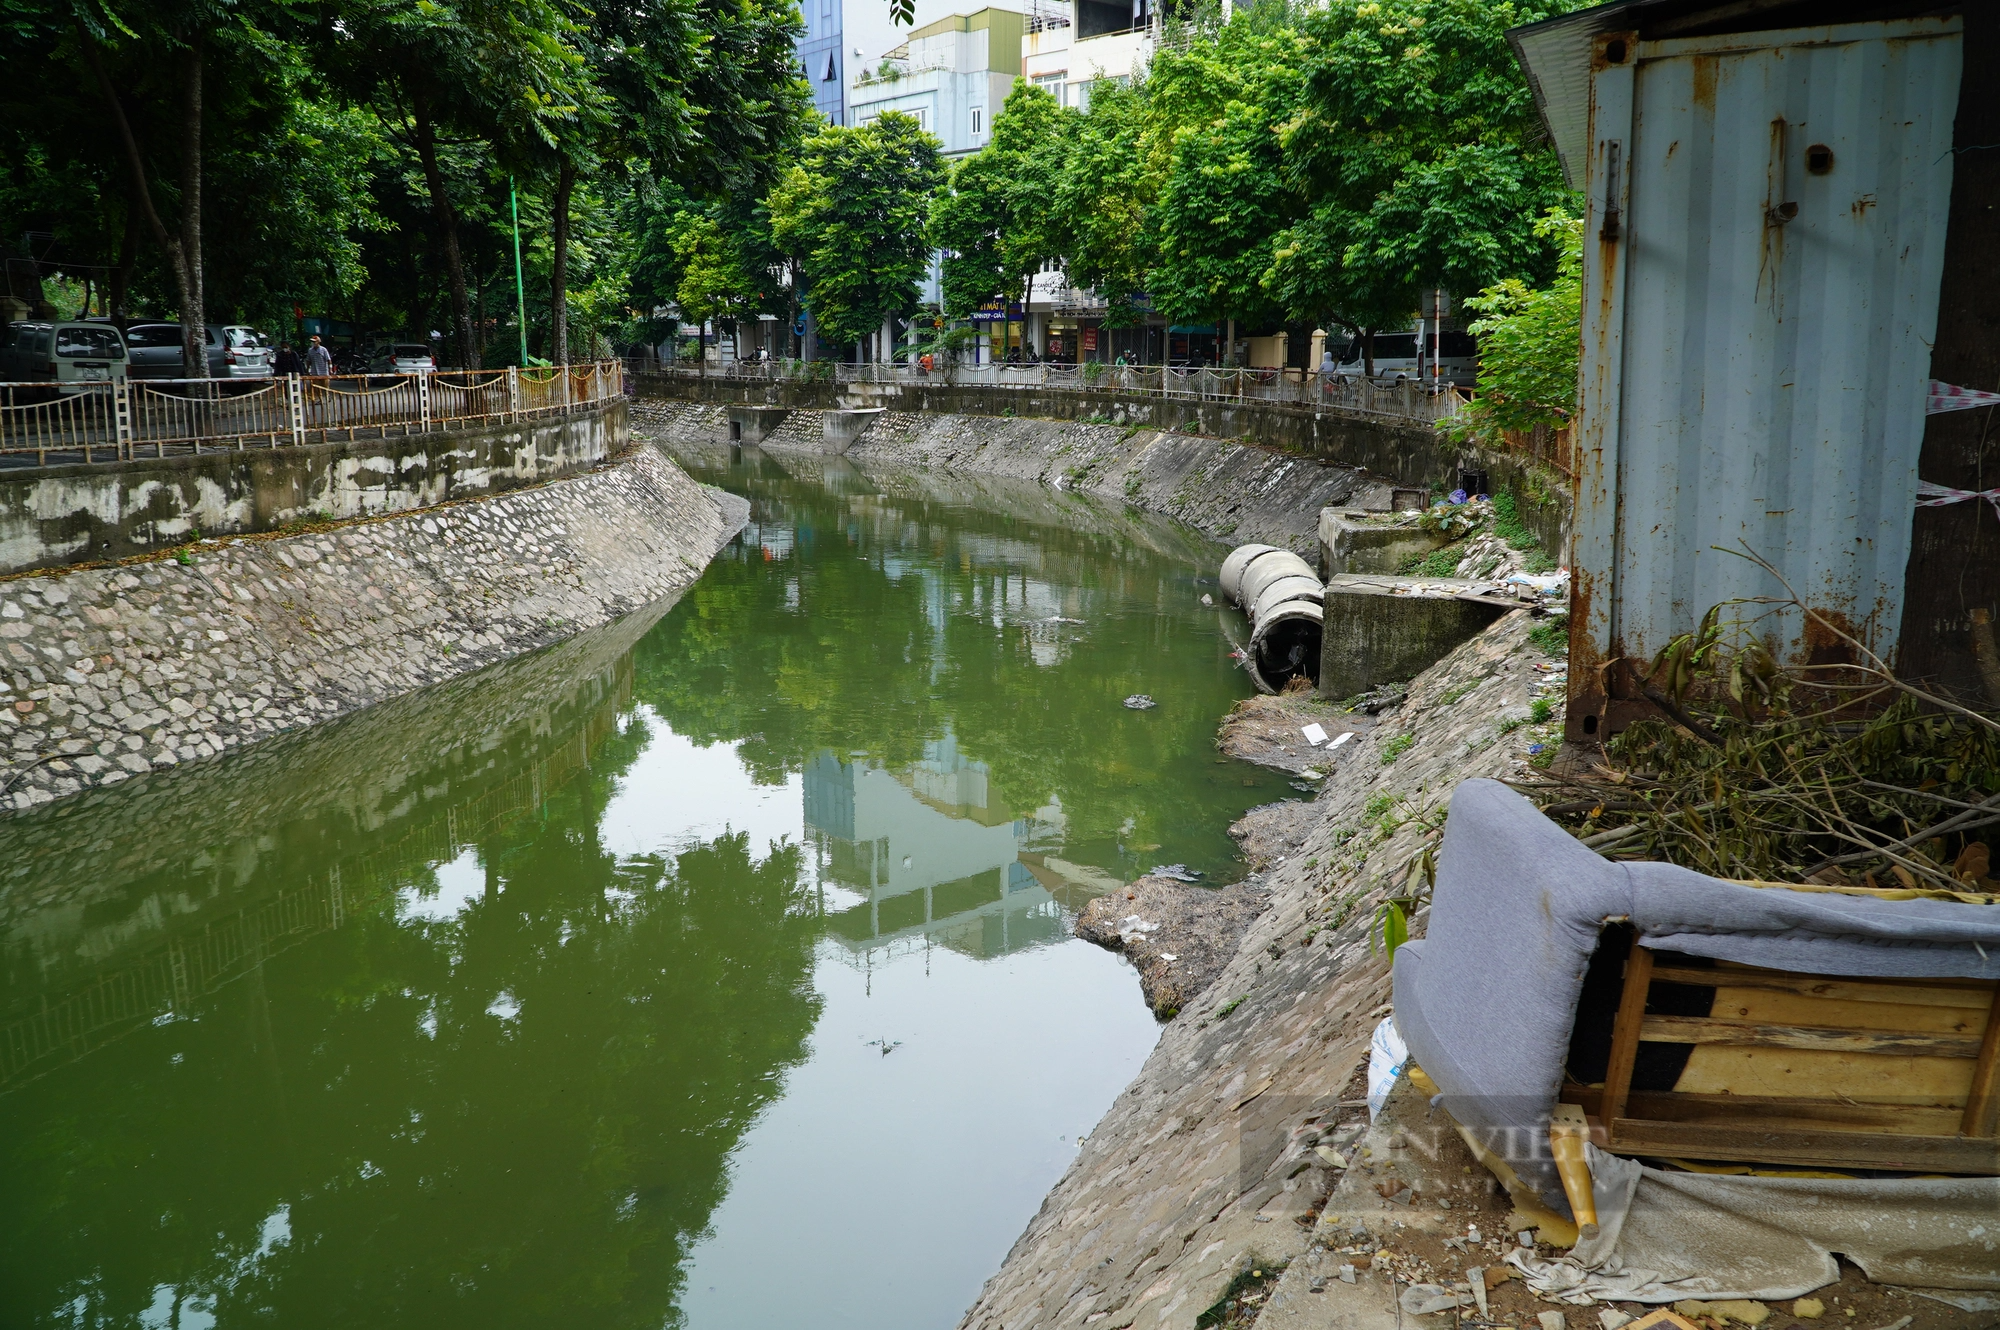  Dự án thu gom nước thải sinh hoạt trên sông Lừ vẫn ngổn ngang sau 3 năm khởi công - Ảnh 6.